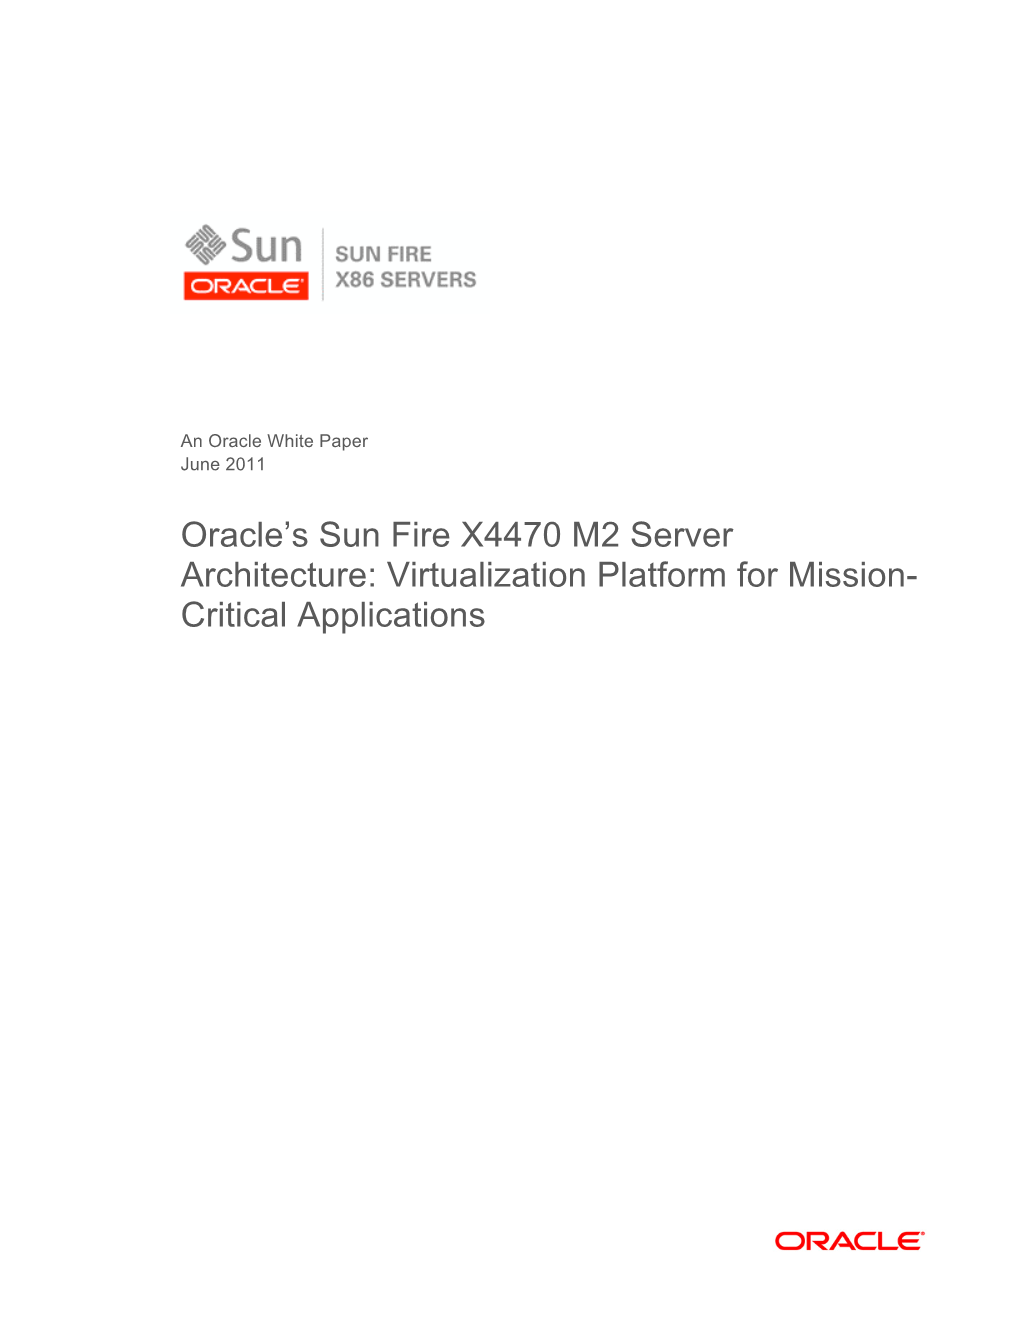 Oracle's Sun Fire X4470 M2 Server Architecture: Virtualization Platform